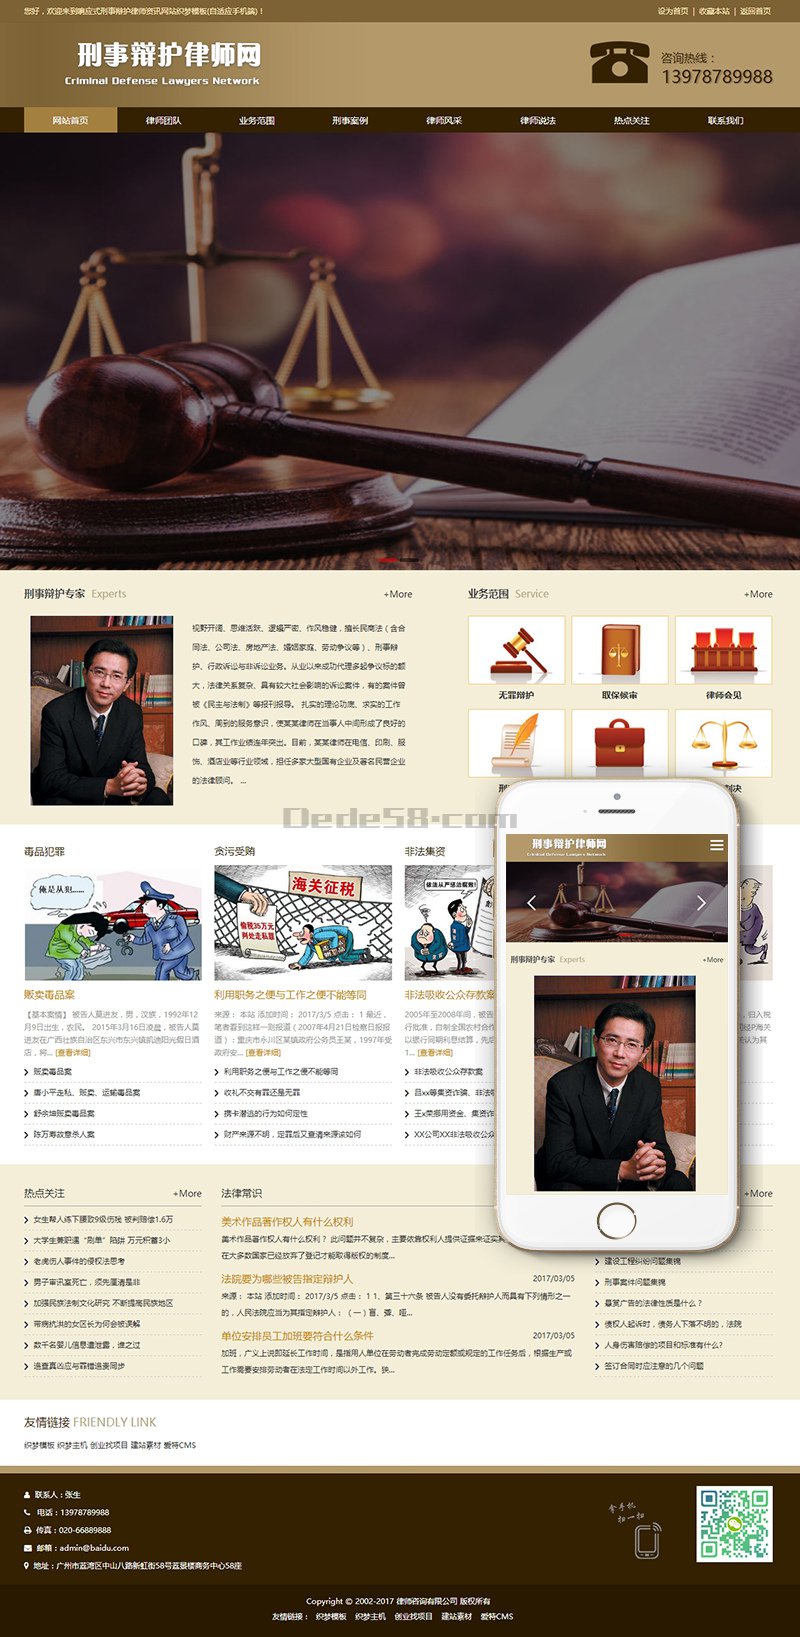 刑事辩护律师辩护律师资讯WordPress模板主题演示图